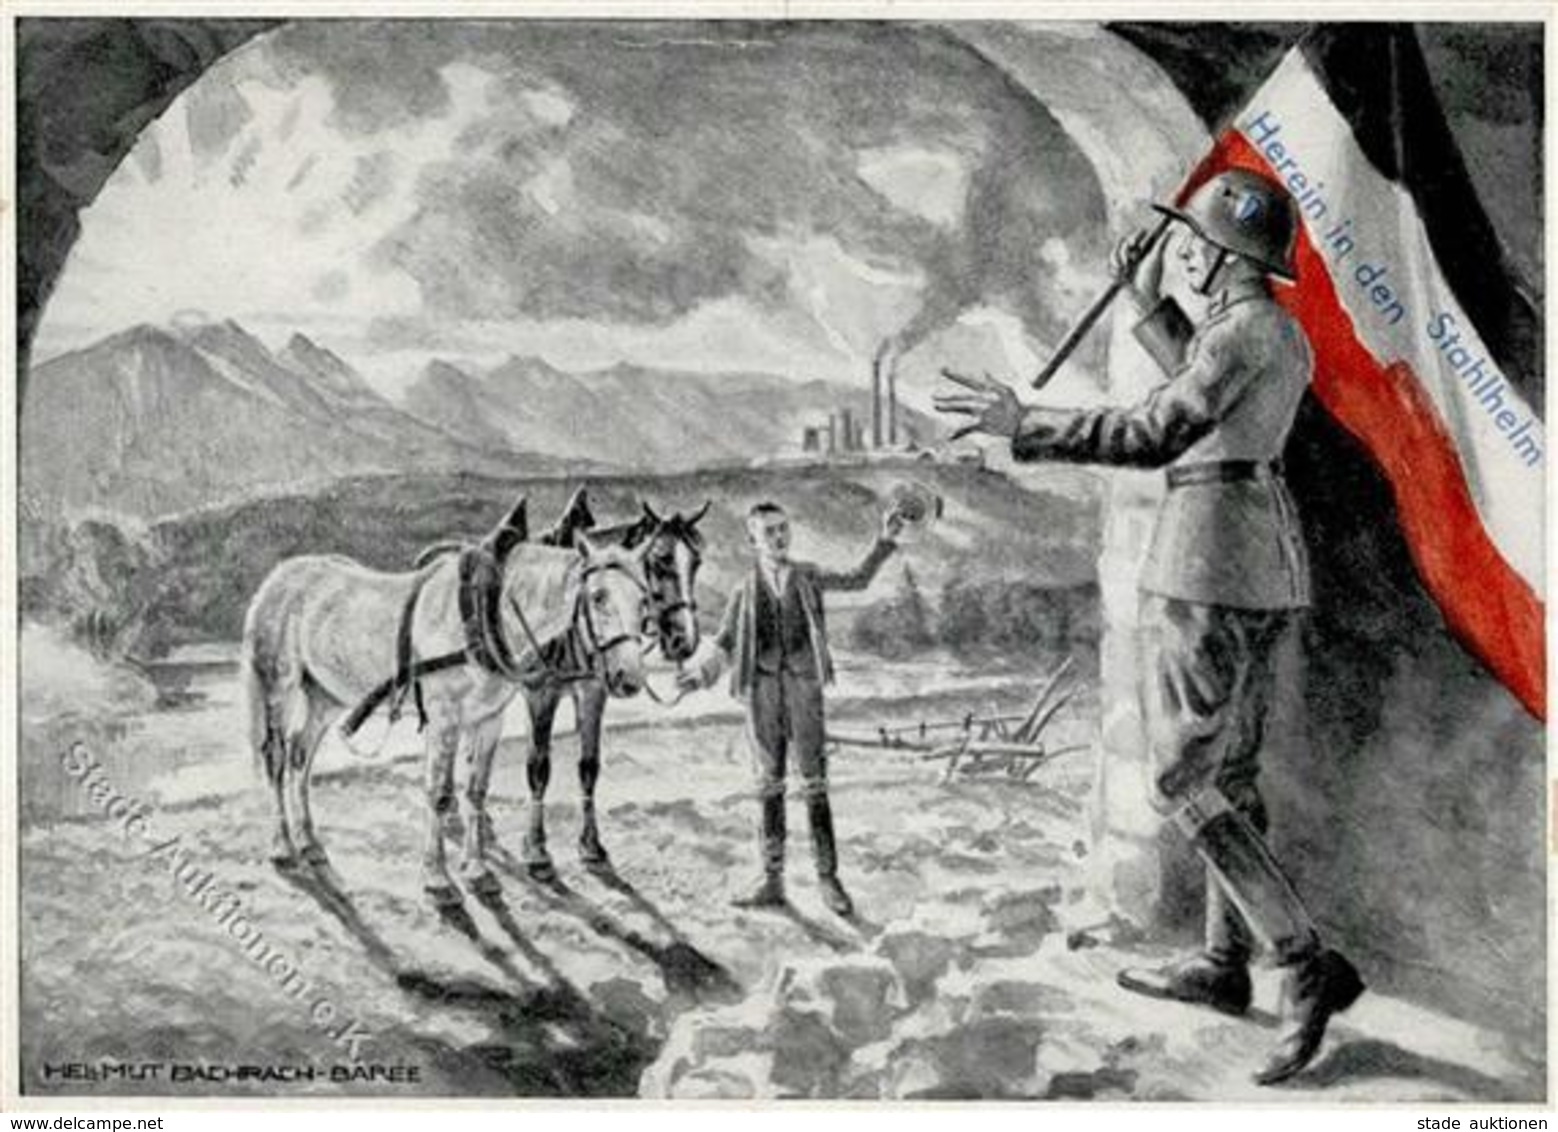 Zwischenkriegszeit Propaganda Stahlhelm Sign. Bachrach-Baree, Helmut Künstler-Karte I-II - Geschichte